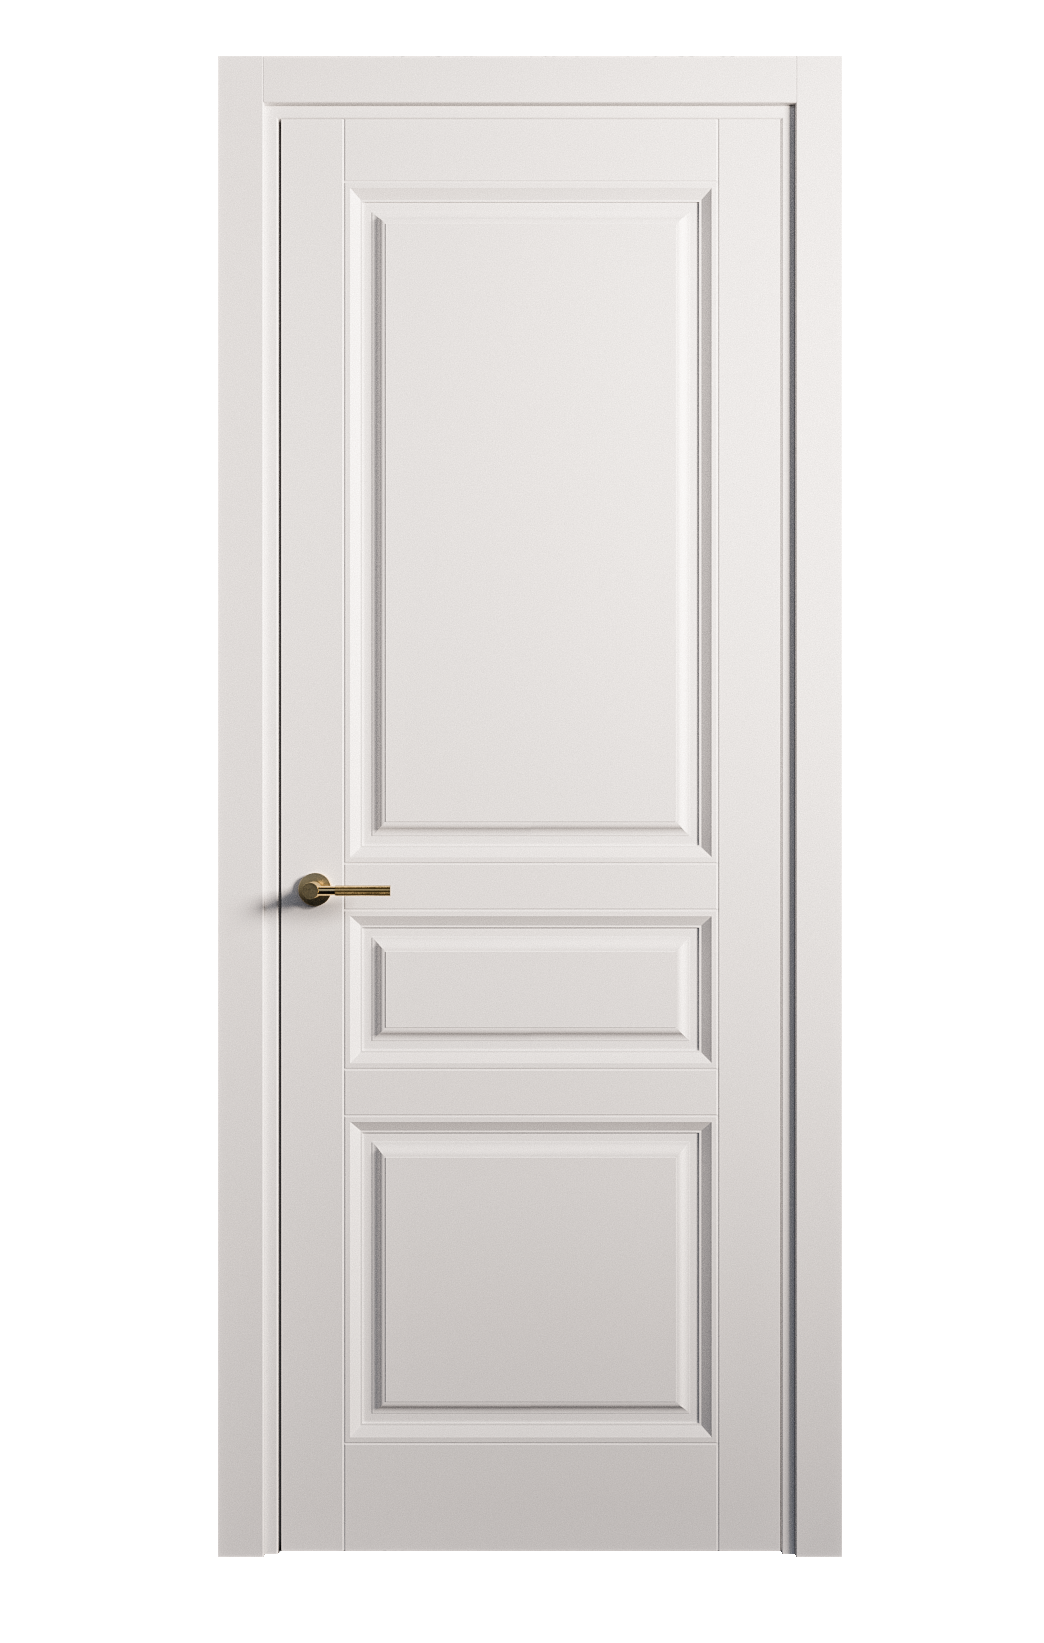 Межкомнатная дверь Venezia-2 глухая эмаль ral 9003 25711